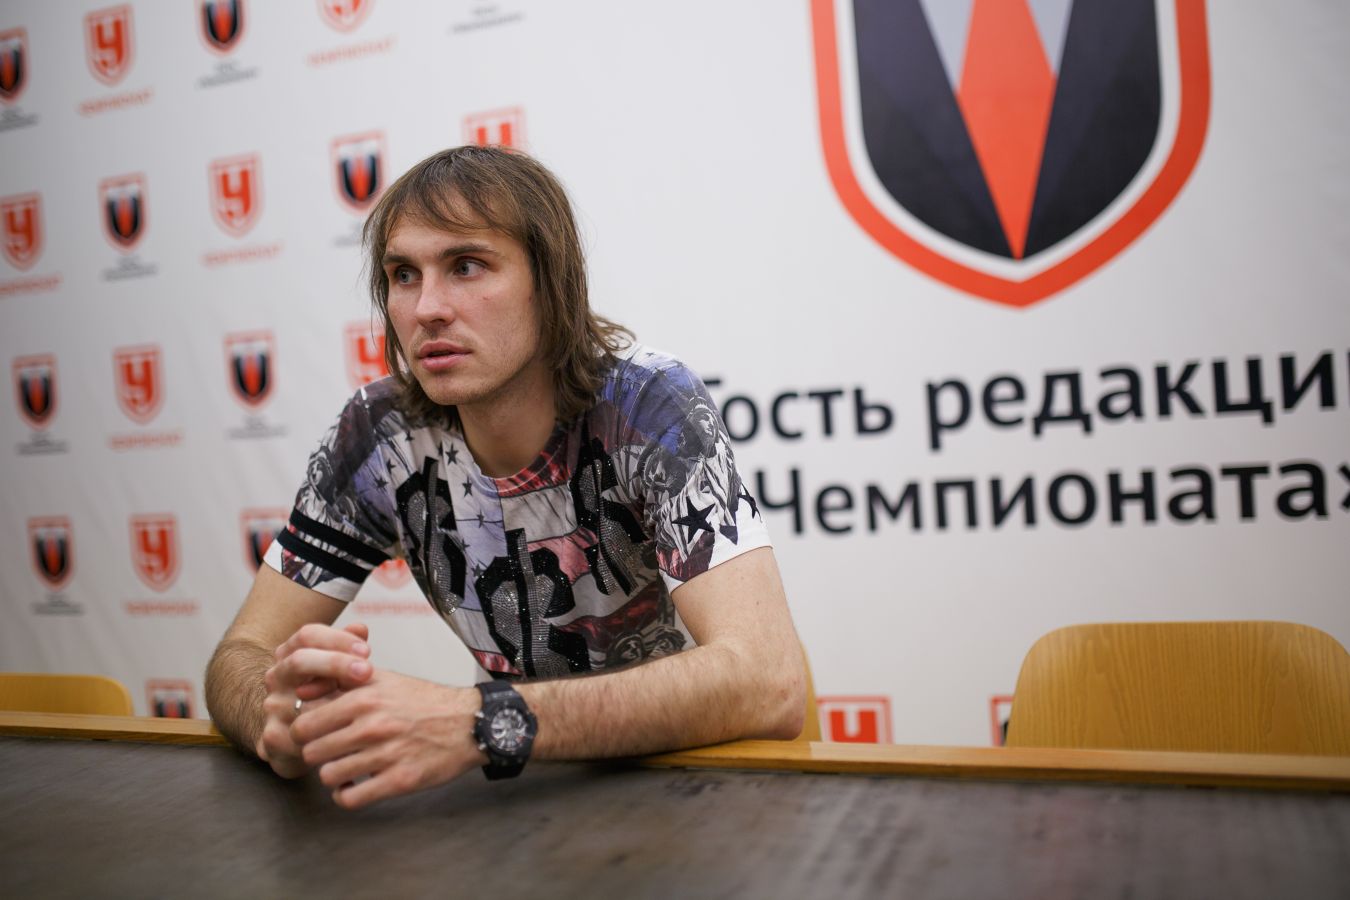 Виталий Дьяков: на сегодняшний день нельзя сказать, что VAR стал помощником в футболе